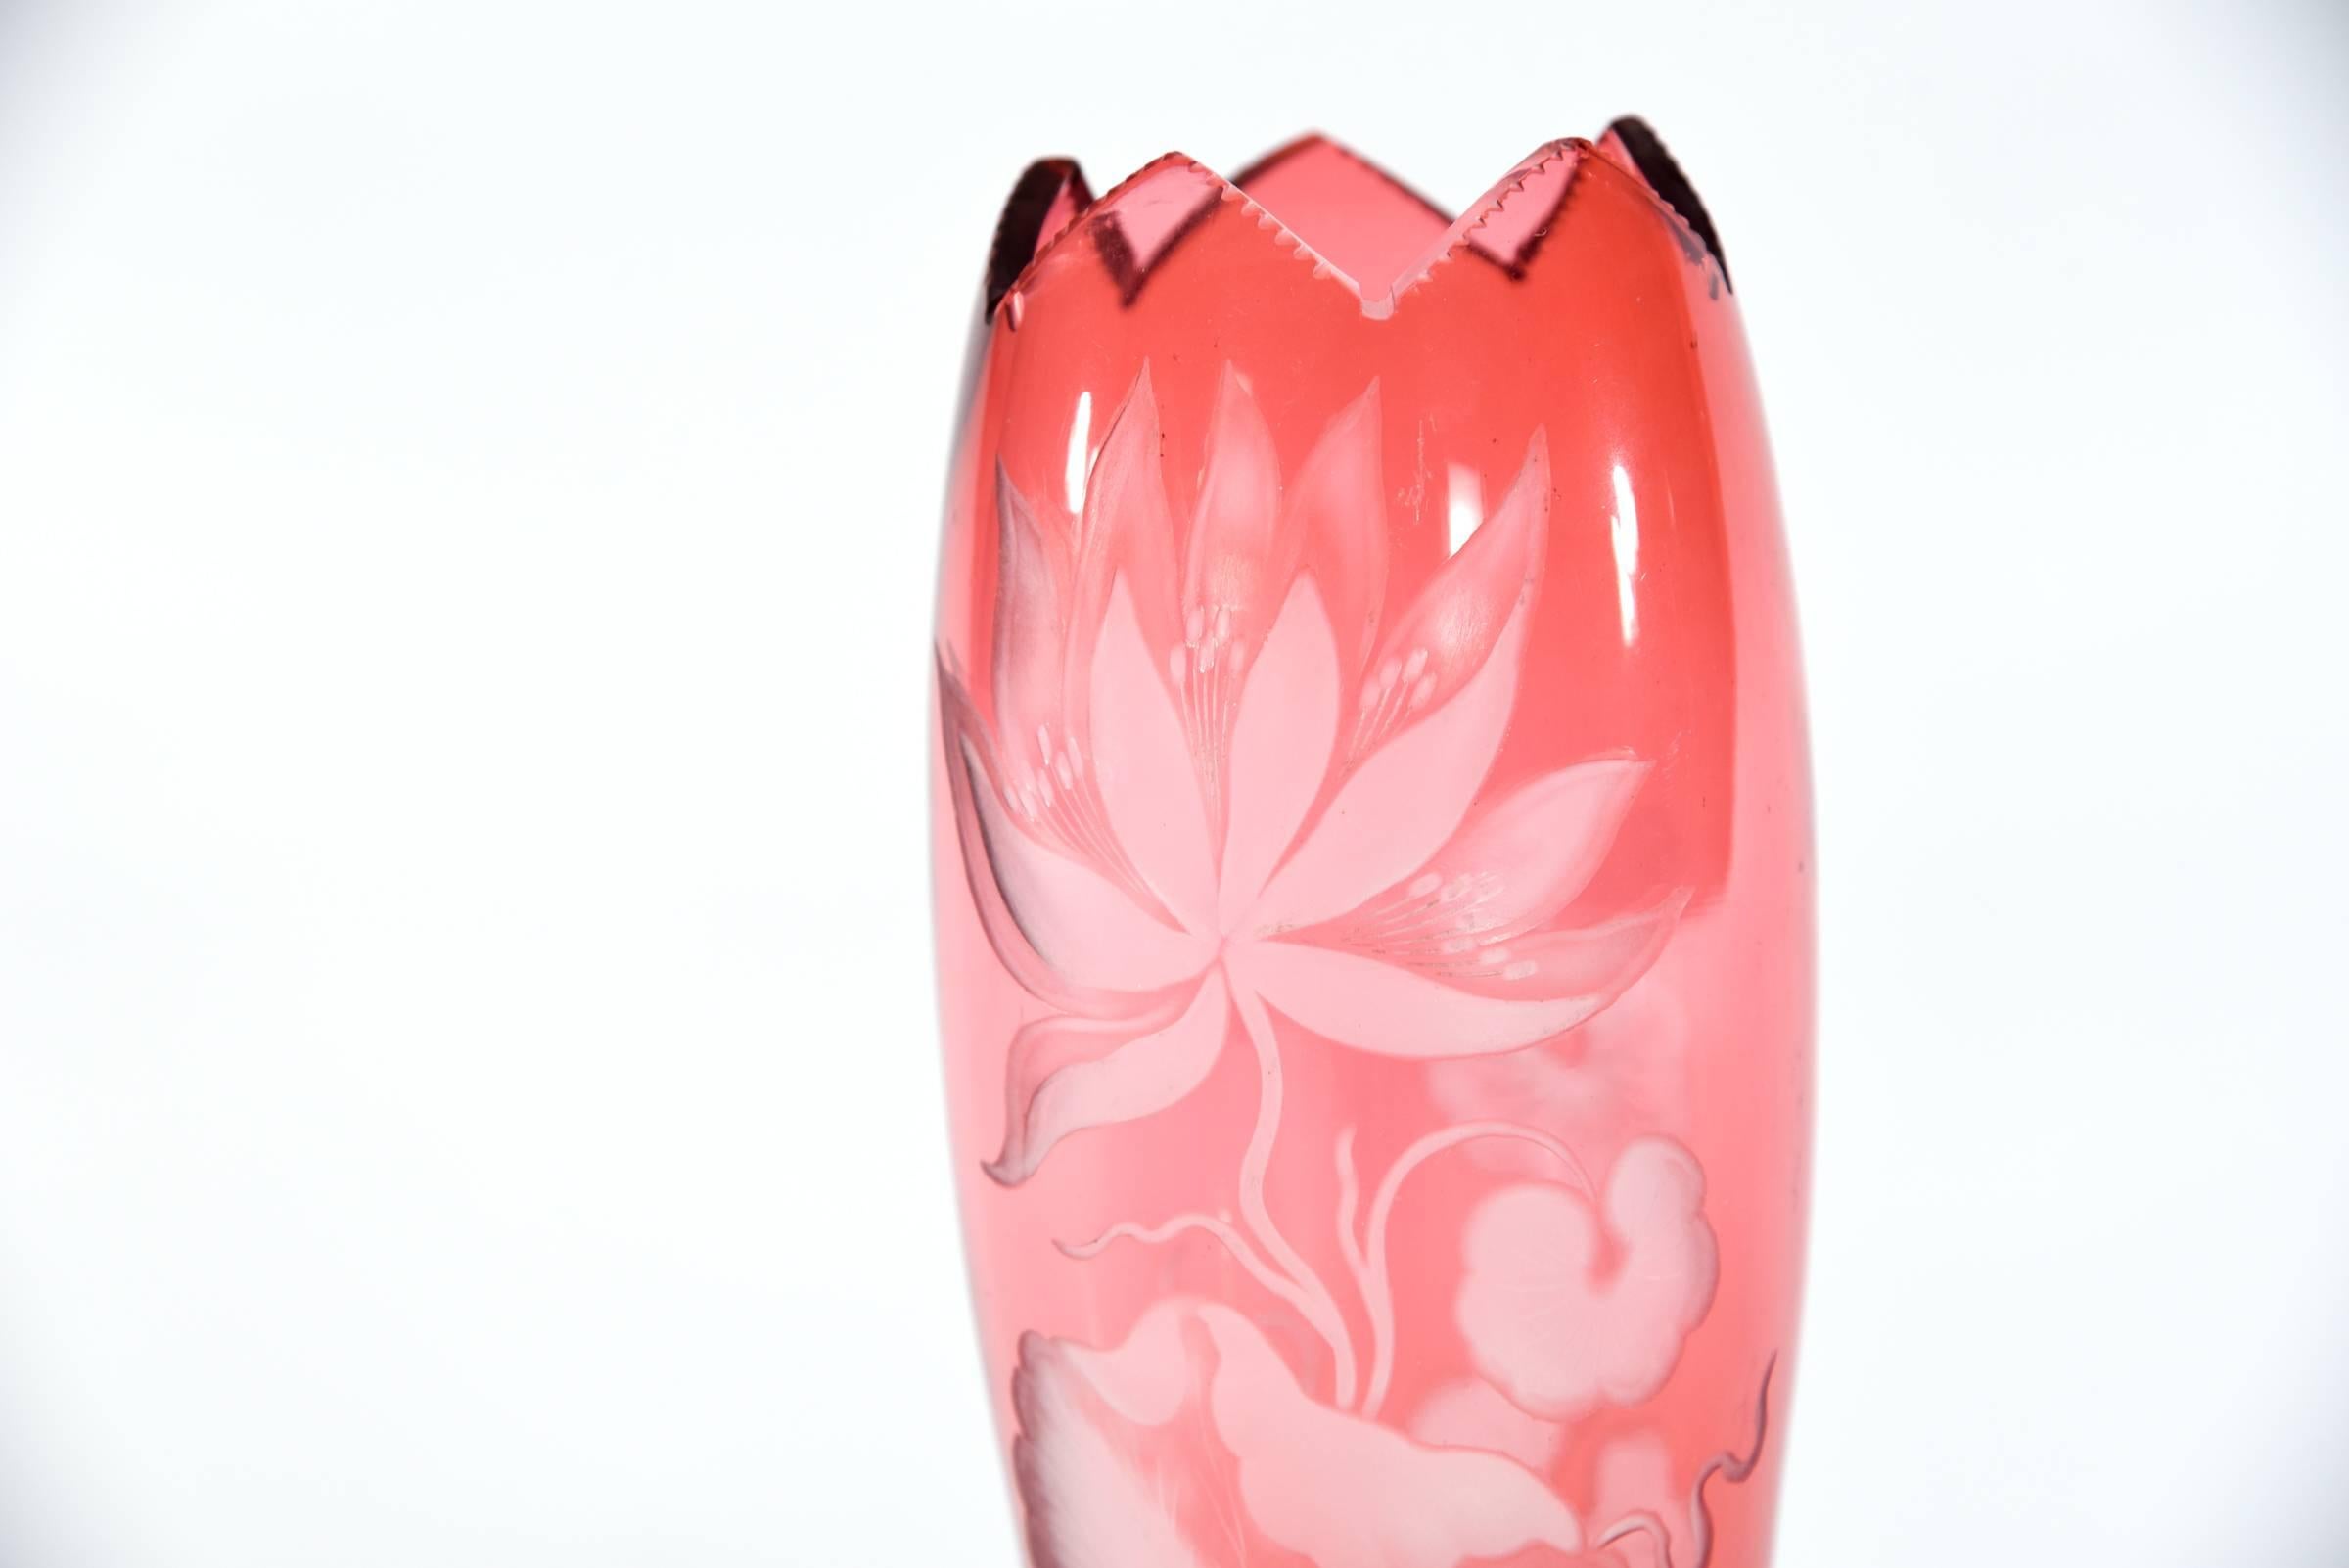 Diese Vase aus mundgeblasenem Kristall wurde von Webb, England, hergestellt. Sie ist mit Preiselbeeren überzogen und mit dem ikonischen Seerosenmotiv des Jugendstils geschliffen. Die hohe und elegante Form wird durch eine sechszackige Öffnung und